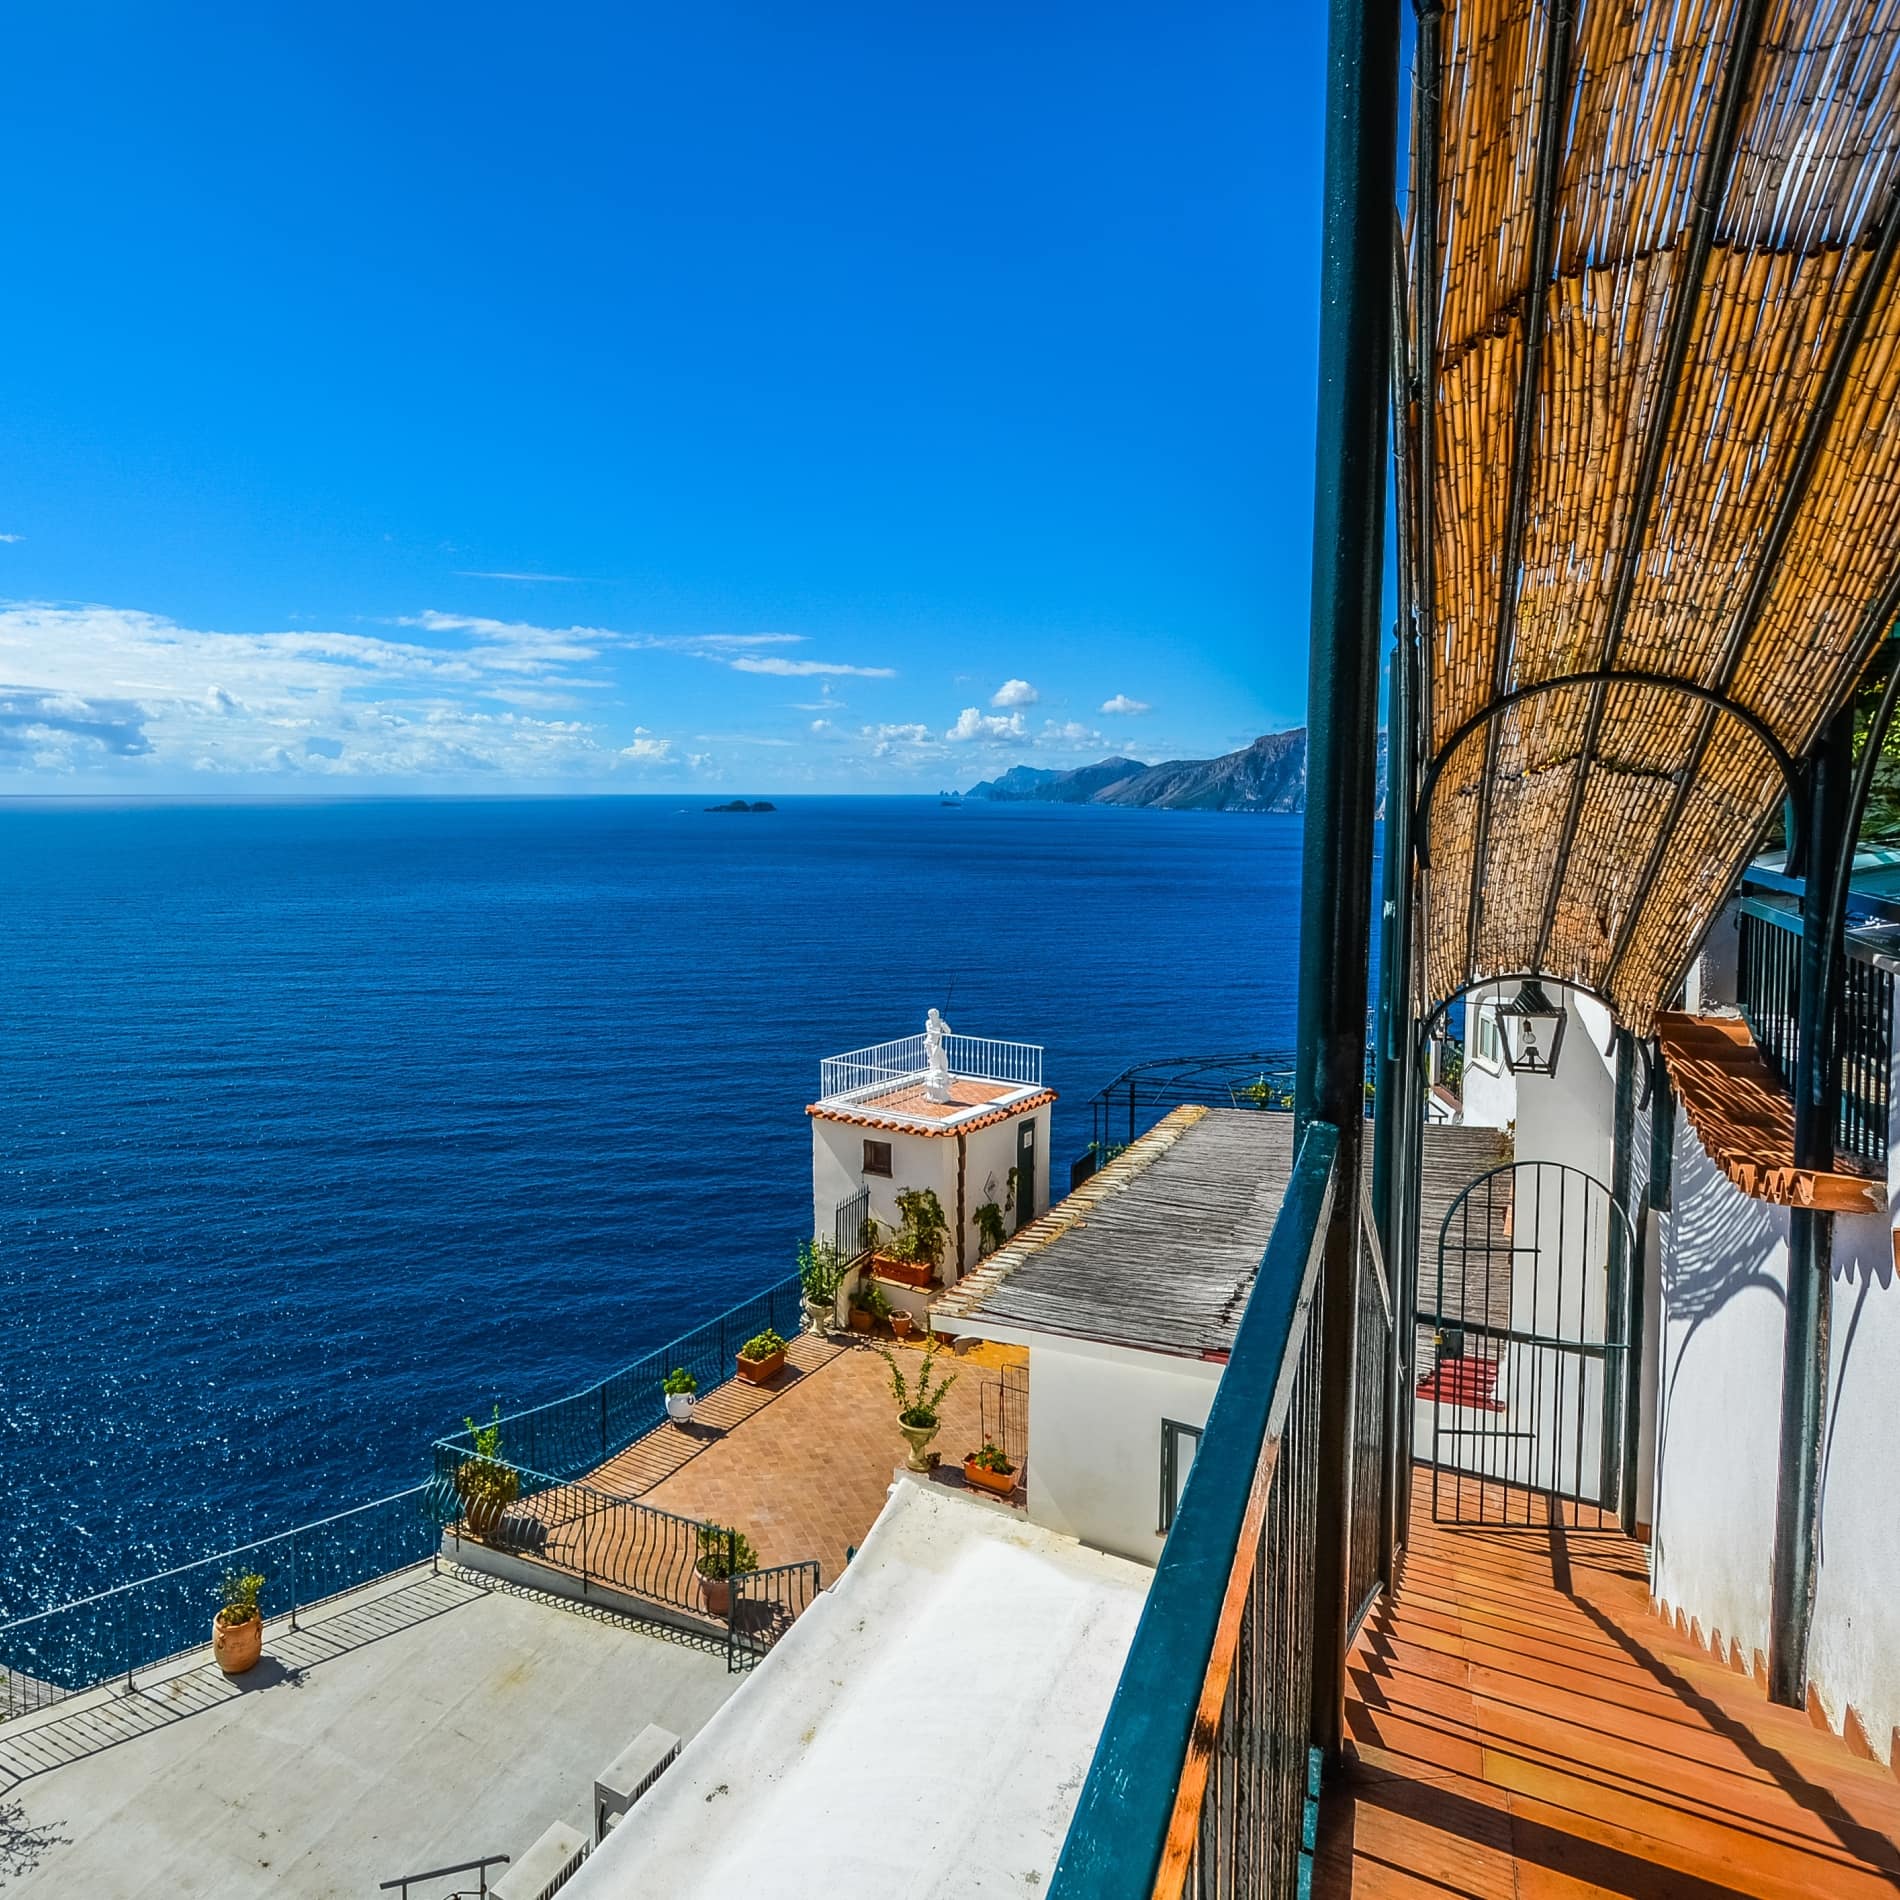 Blick aufs kobaltblaue Meer von einer Villa an der Amalfiküste in Süditalien, die möglicherweise als Ferienhaus gemietet werden kann